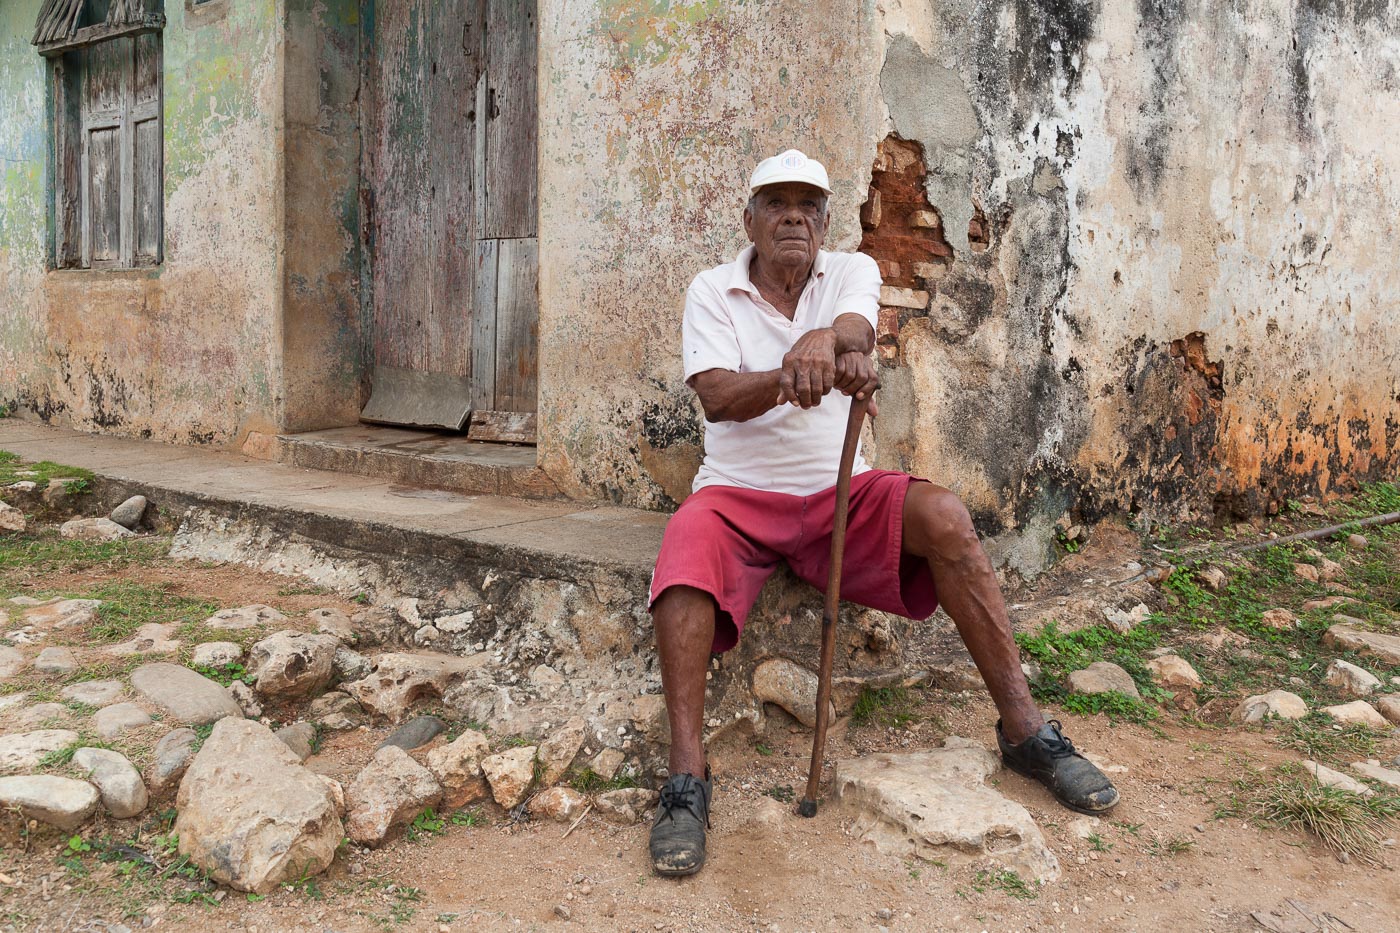 Resident of Trinidad, Cuba